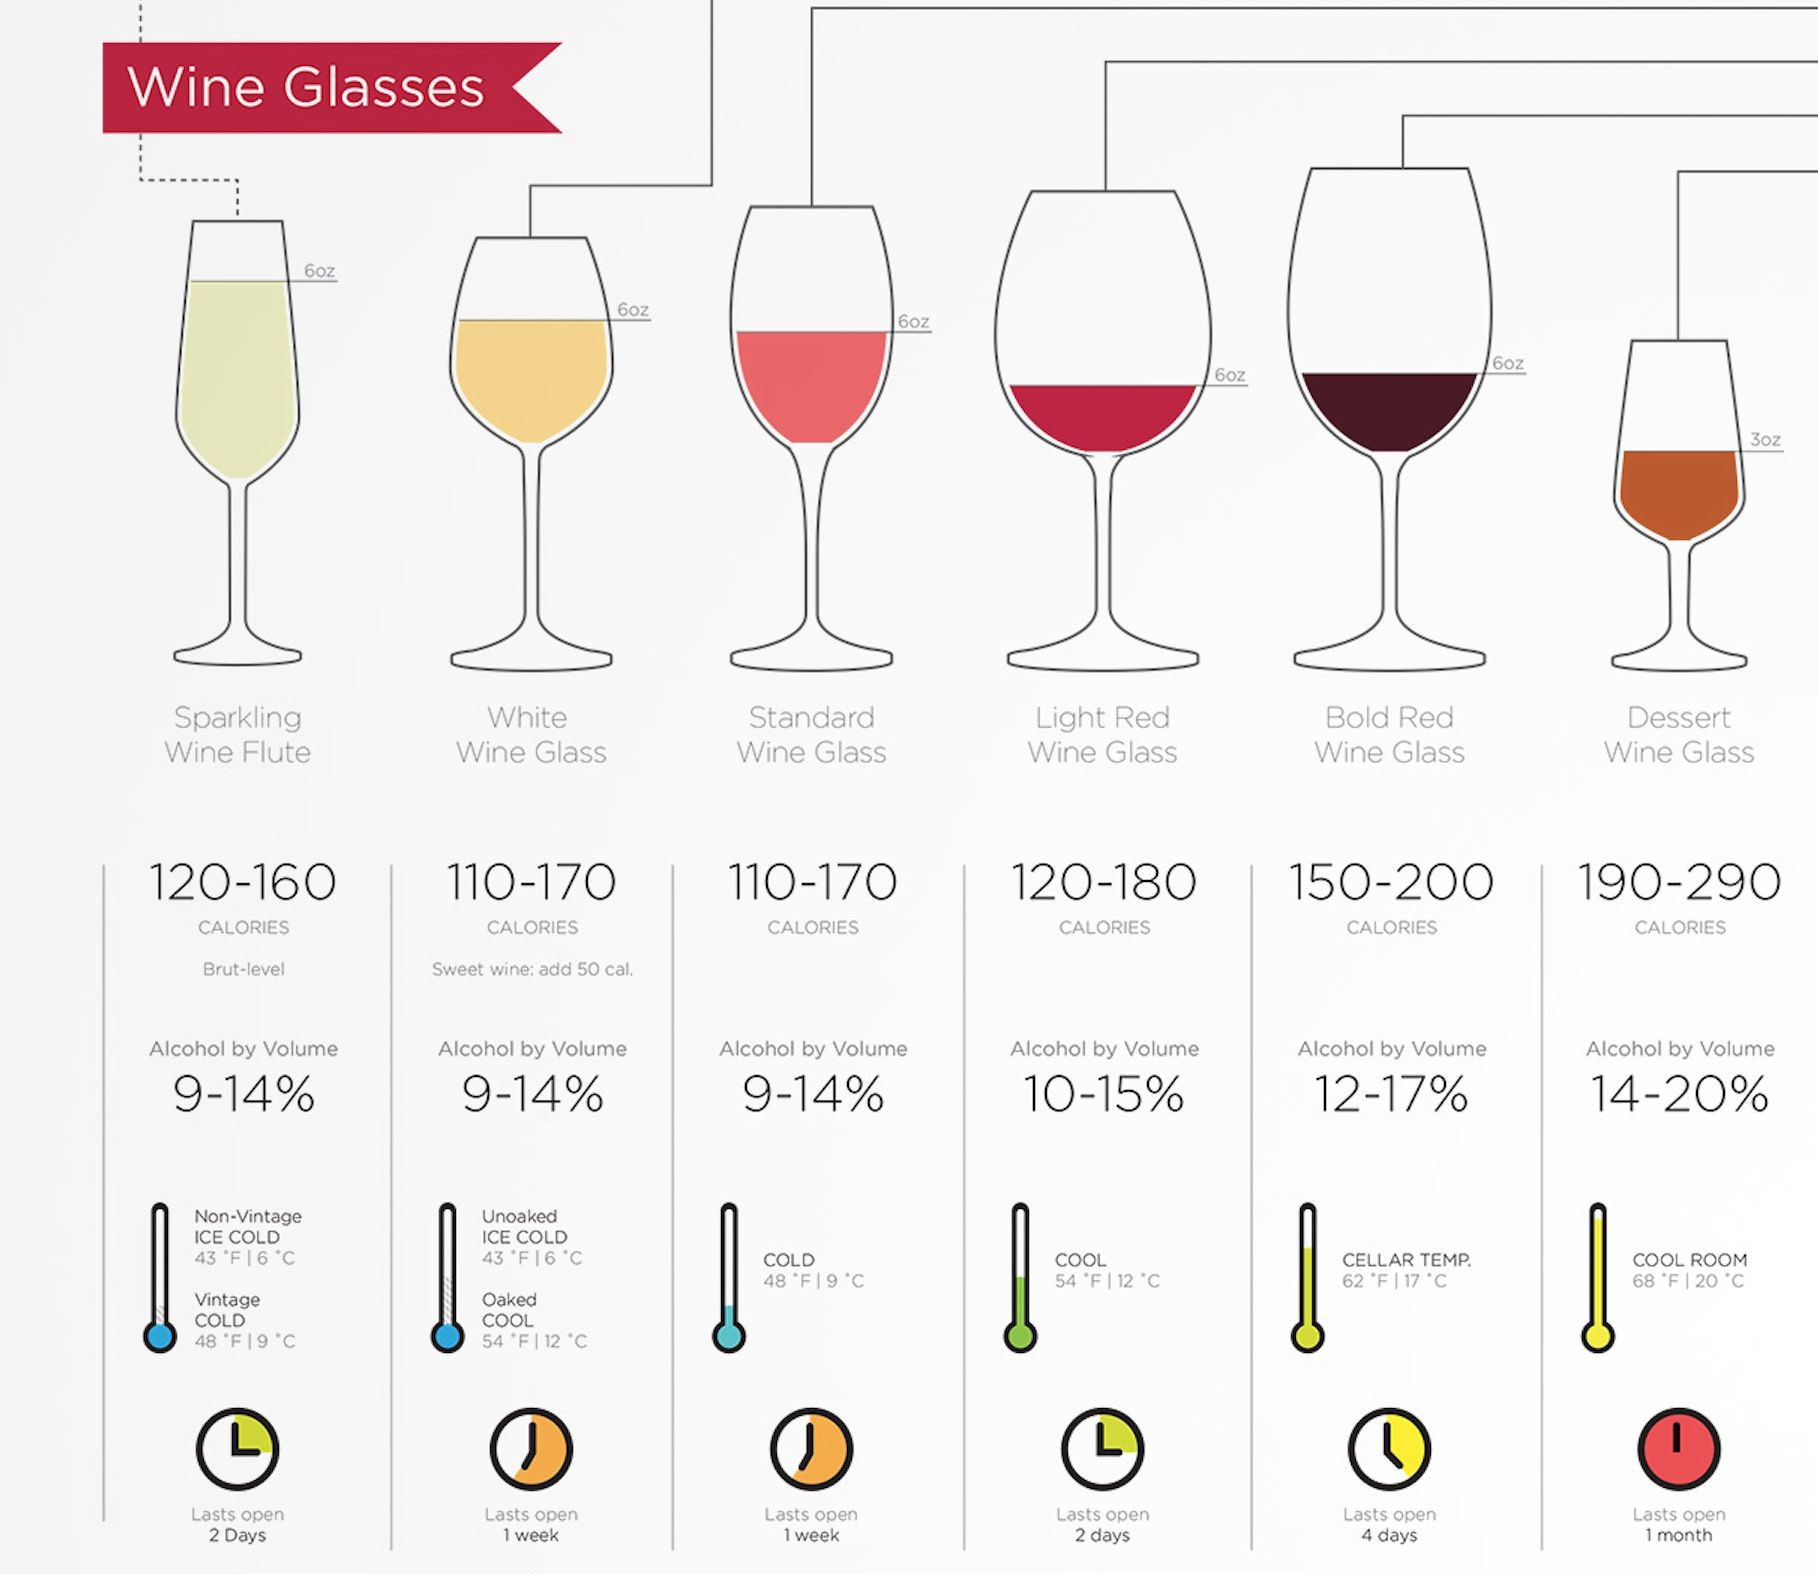 Calories per wine glass. Who